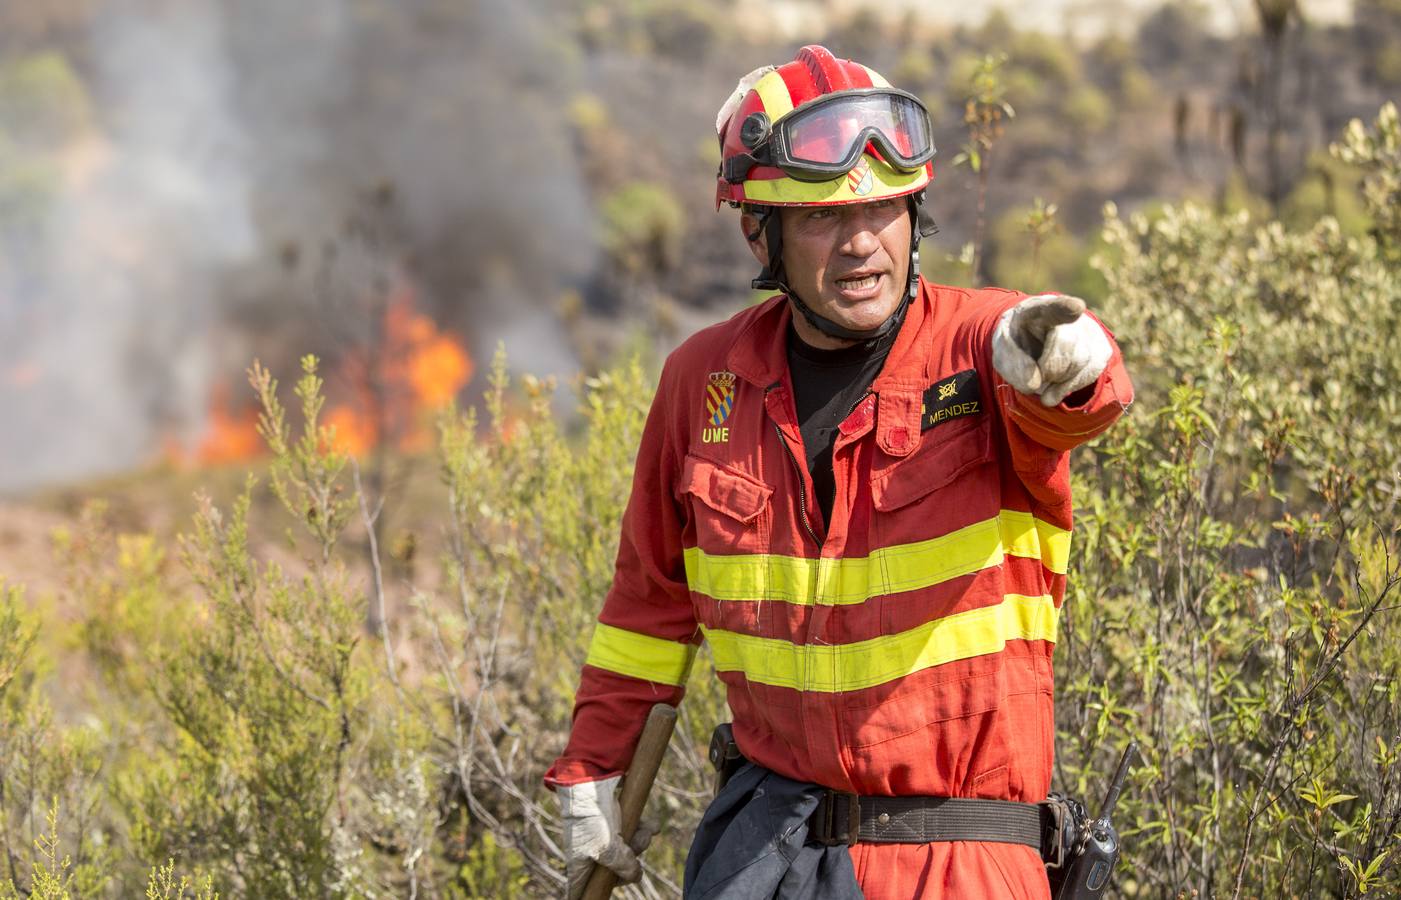 Impactantes imágenes del incendio de Nerva en Huelva